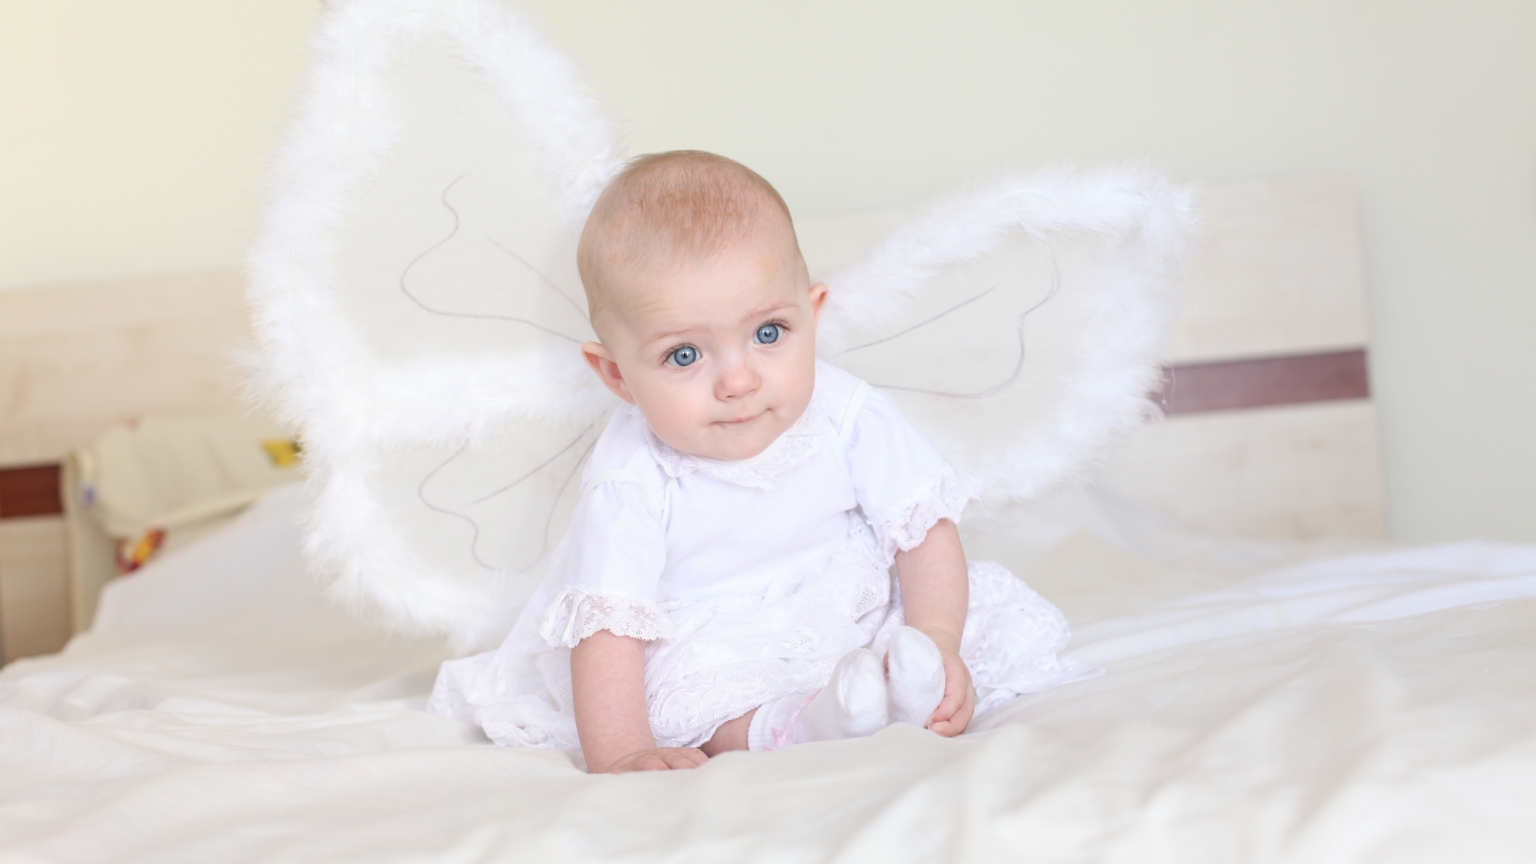 Little Angel for 1536 x 864 HDTV resolution